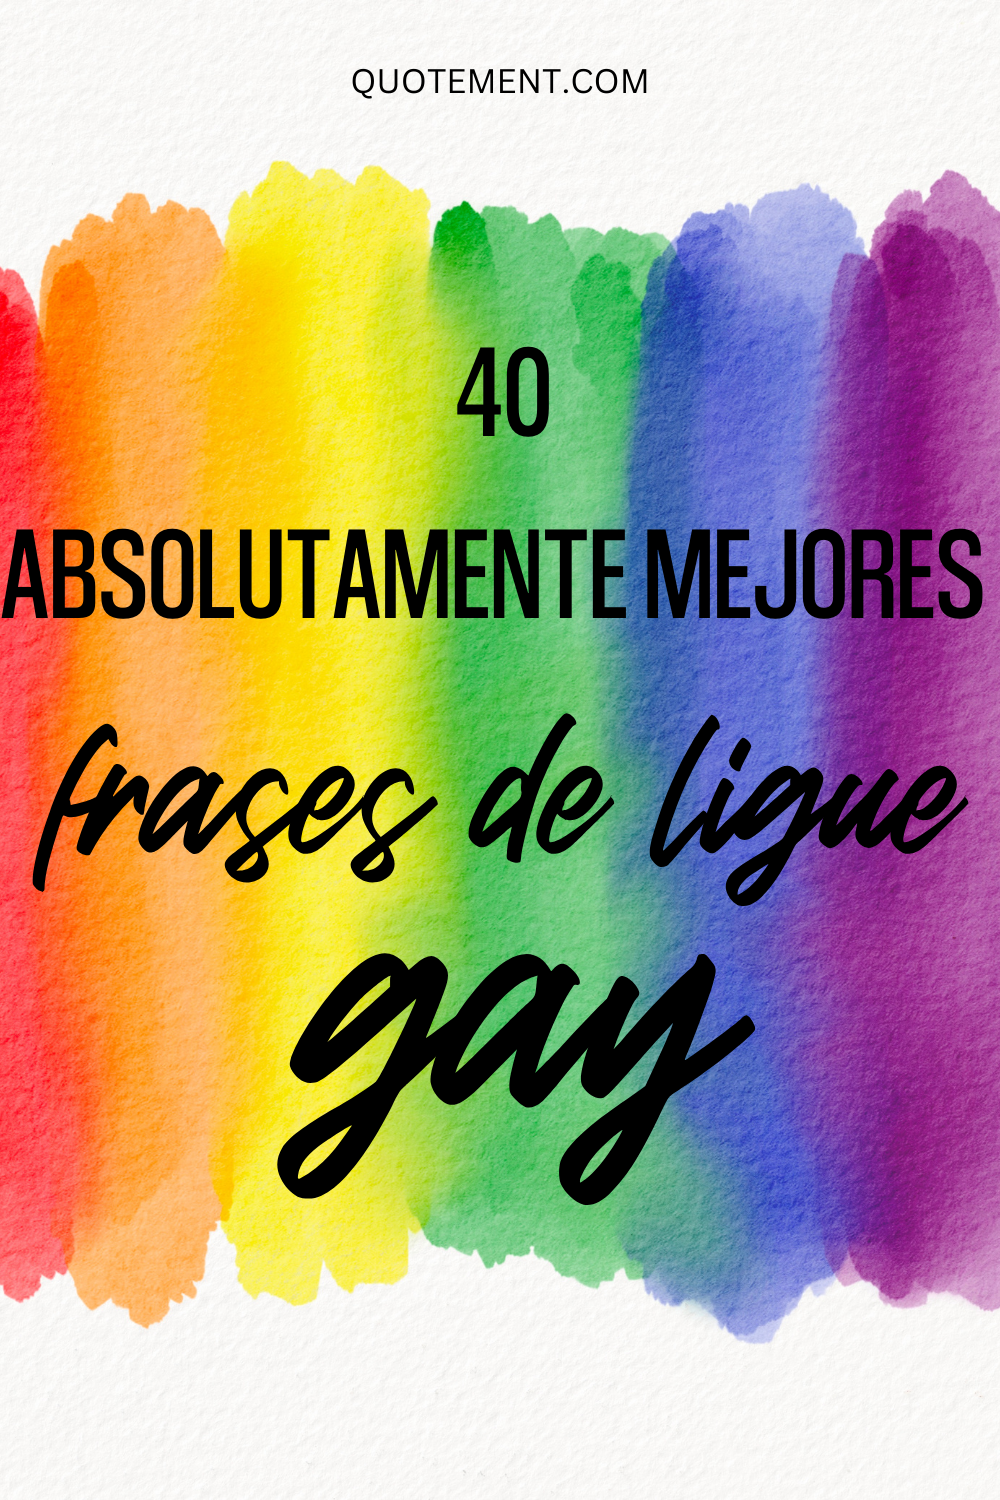 40 coquetas frases de ligue gay para gays y lesbianas